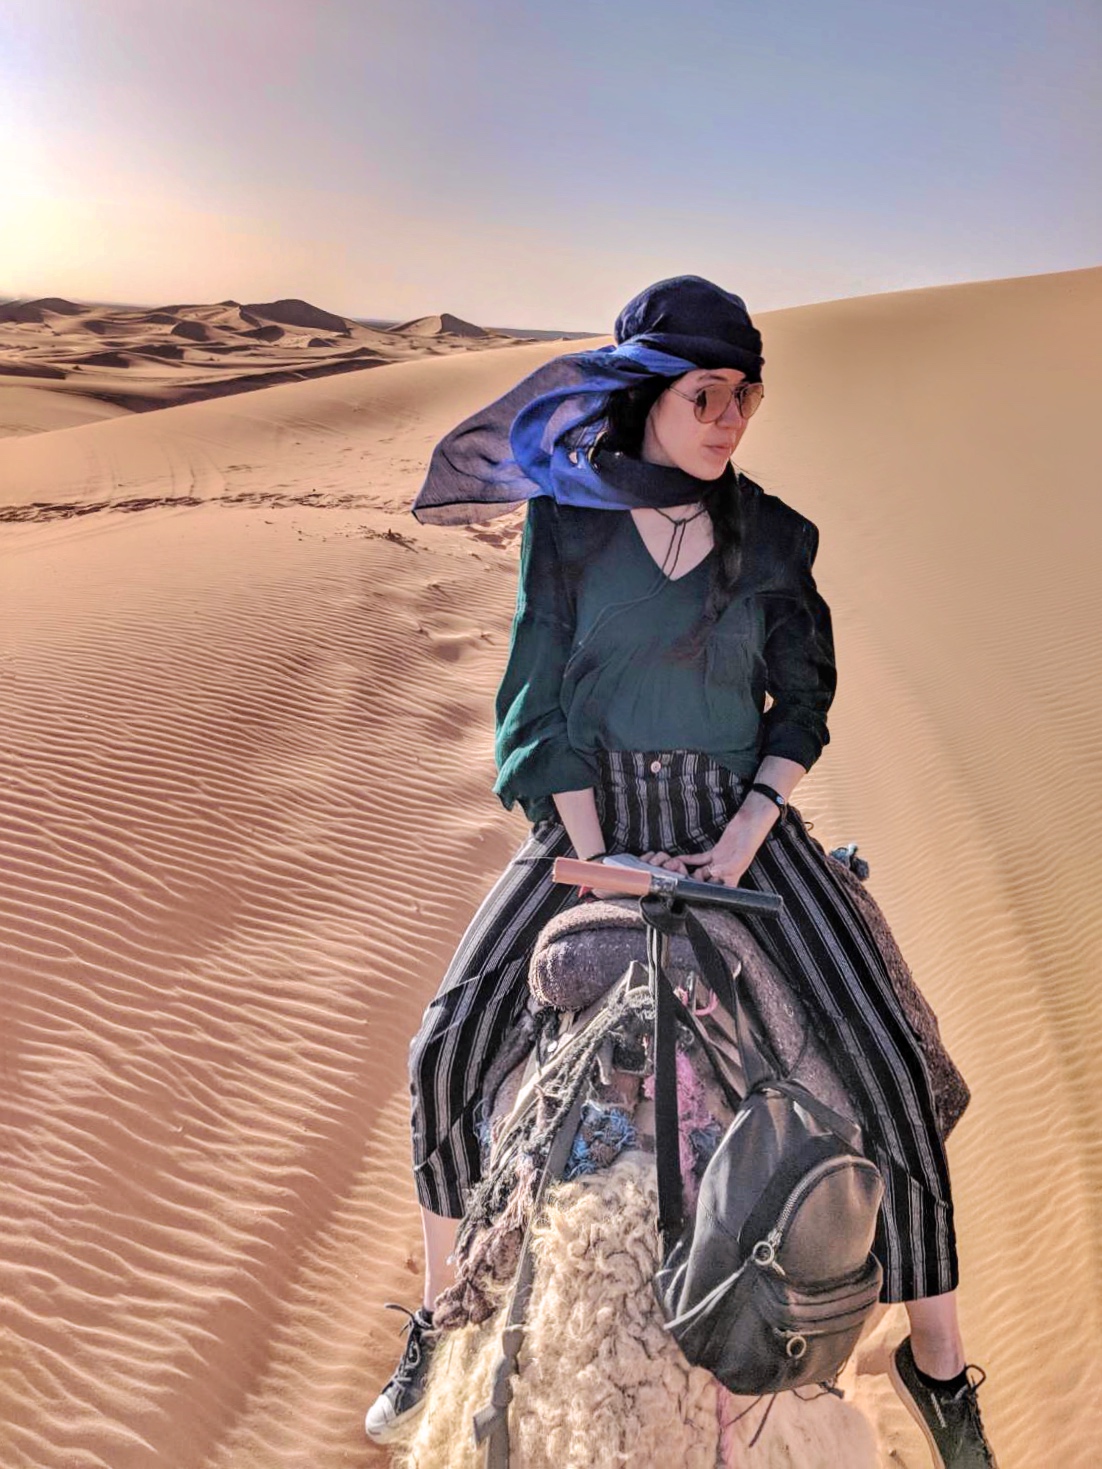 Camel riding in the Sahara desert 